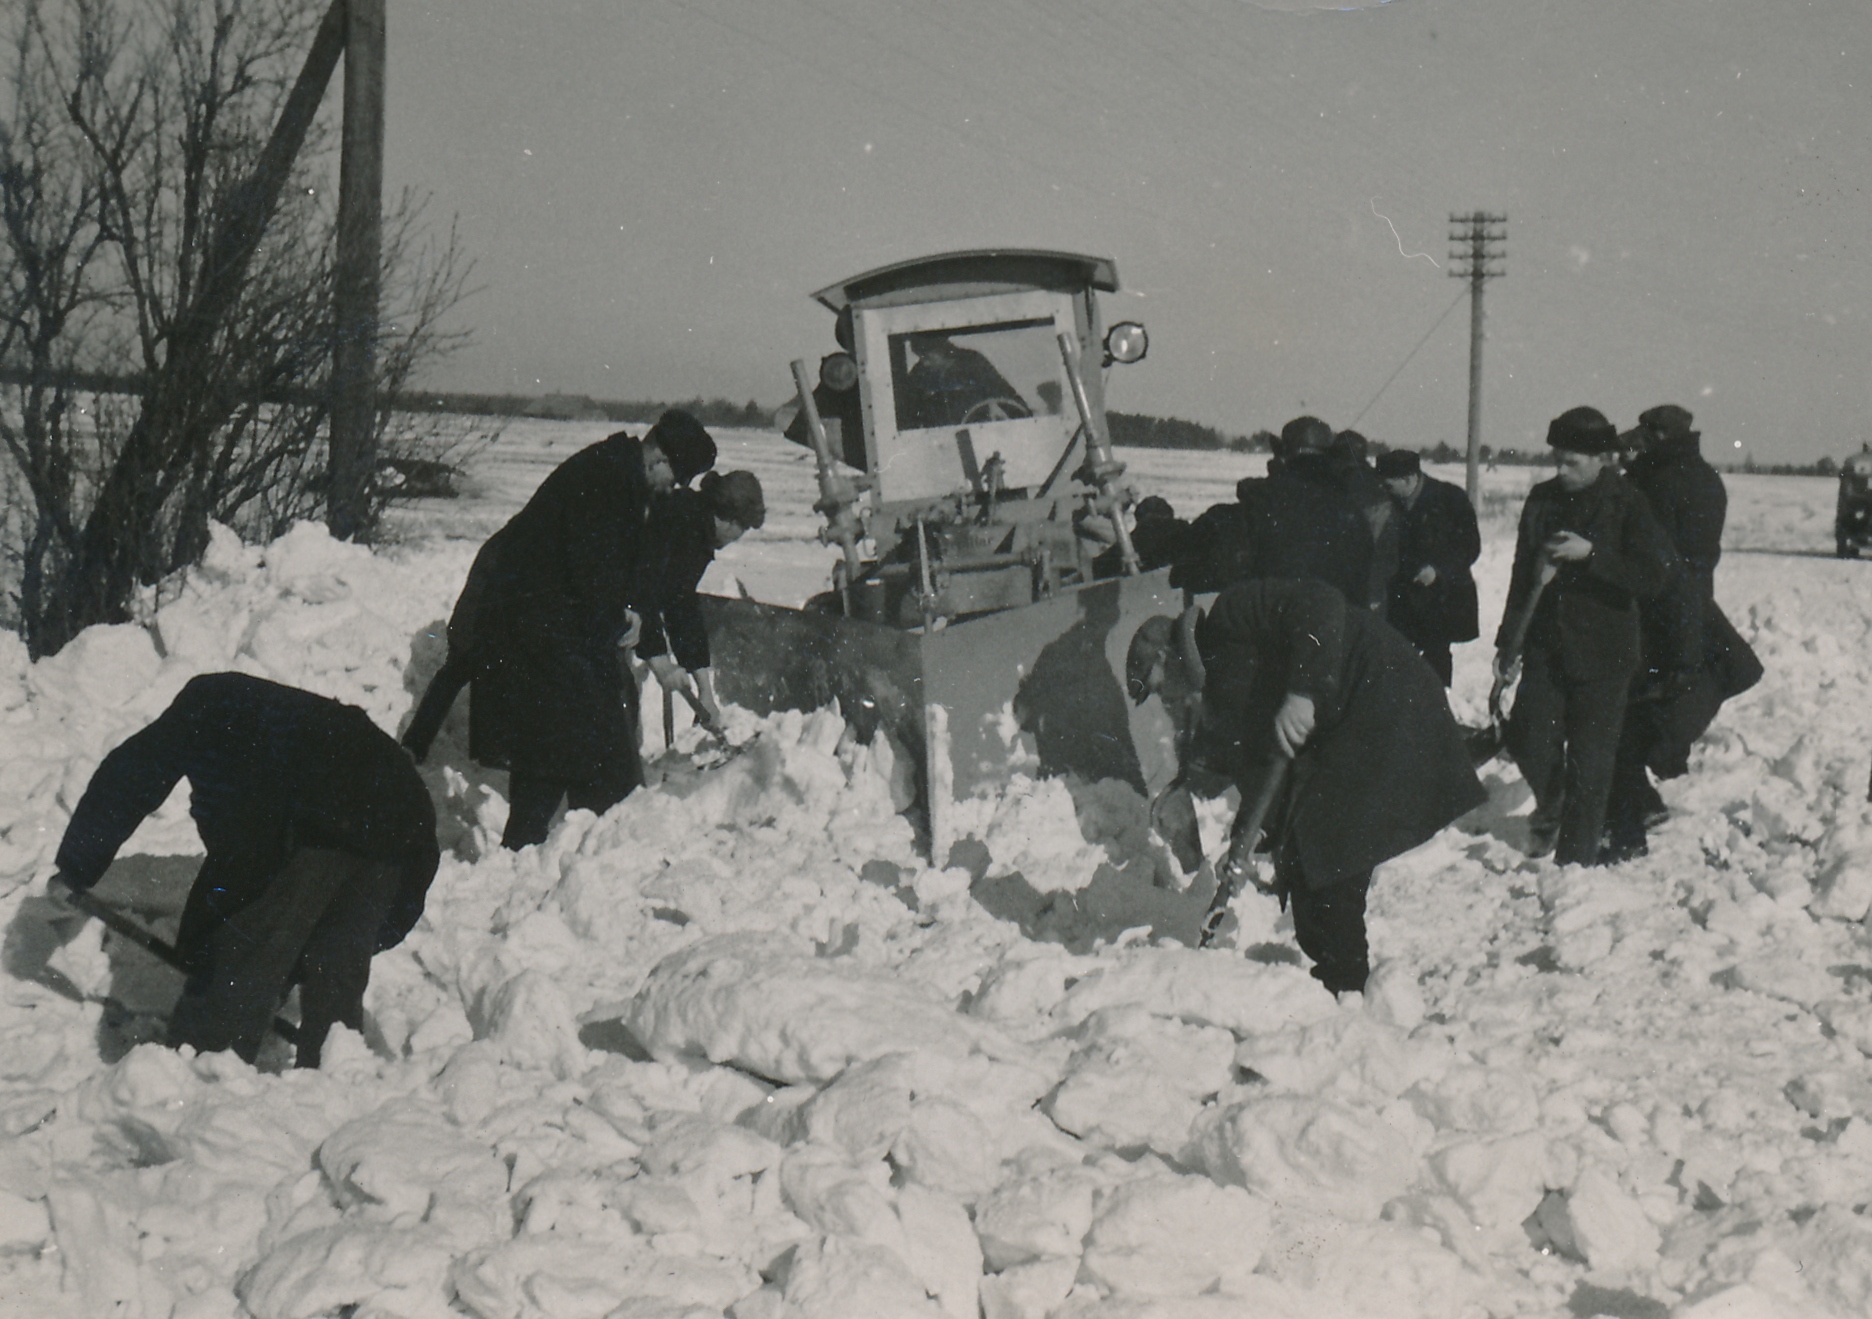 Pärast suure majanduskriisi leevenemist hakati alates 1936. aastast  taas suuremal hulgal lumesahkasi valmistama. 1940. aasta alguse seisuga oli Eestis kasutusel kokku üle 40 mitmesuguse lumesaha. Need jagunesid teehöövlile, traktorile ja veoautole kinnitatavaiks. Teehöövlitega lumetõrje puuduseks loeti, et puhastatud teeala äärde tekkisid järskude servadega vallid ja need tuli kiiresti käsitsi lumelabidaga tasandada, et vähendada tee kinnituiskamise ohtu. (Foto: Eesti Maanteemuuseum)